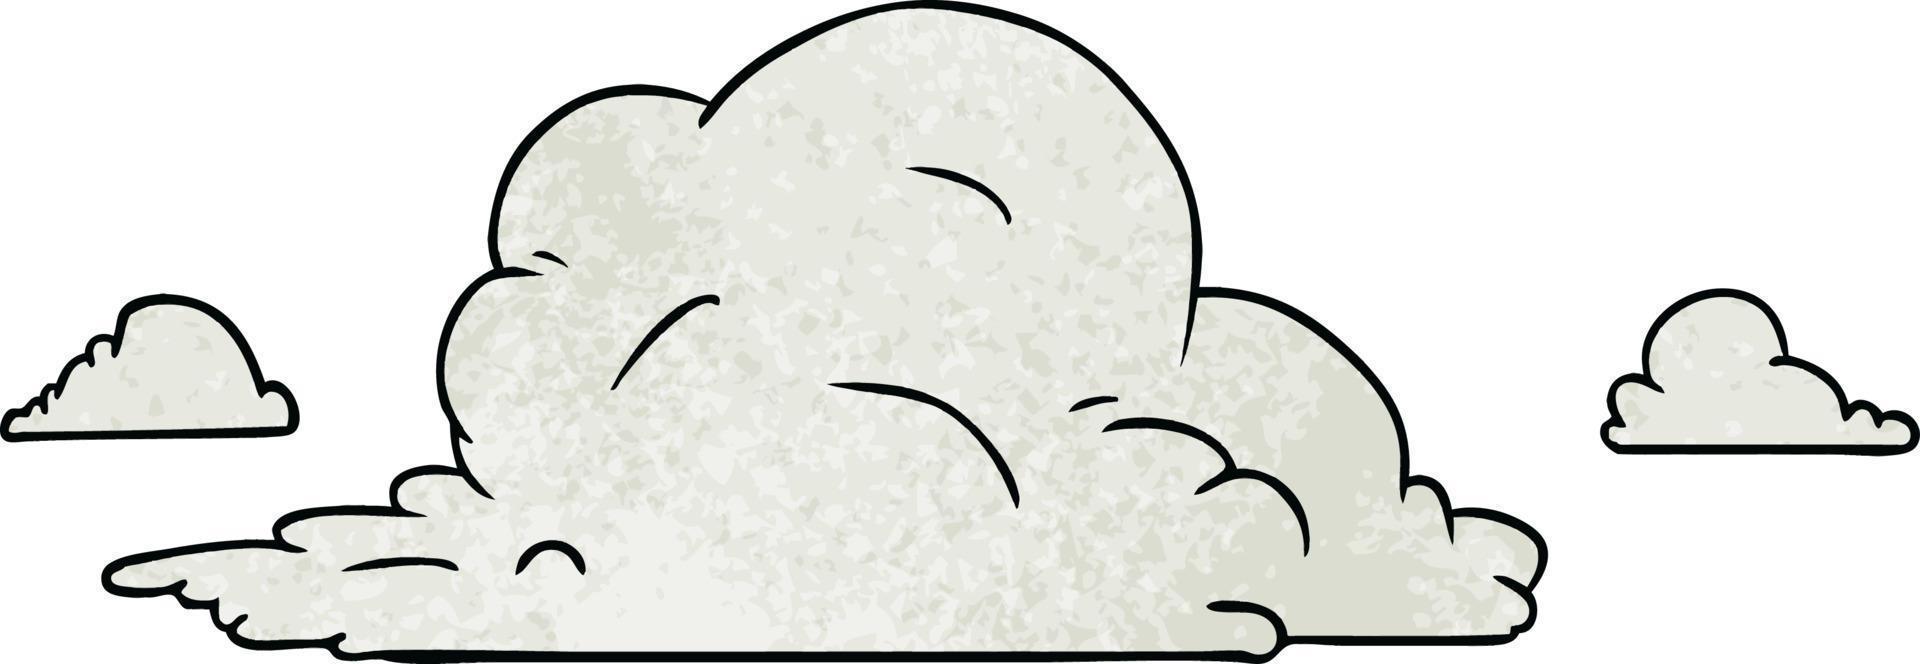 doodle del fumetto strutturato di grandi nuvole bianche vettore